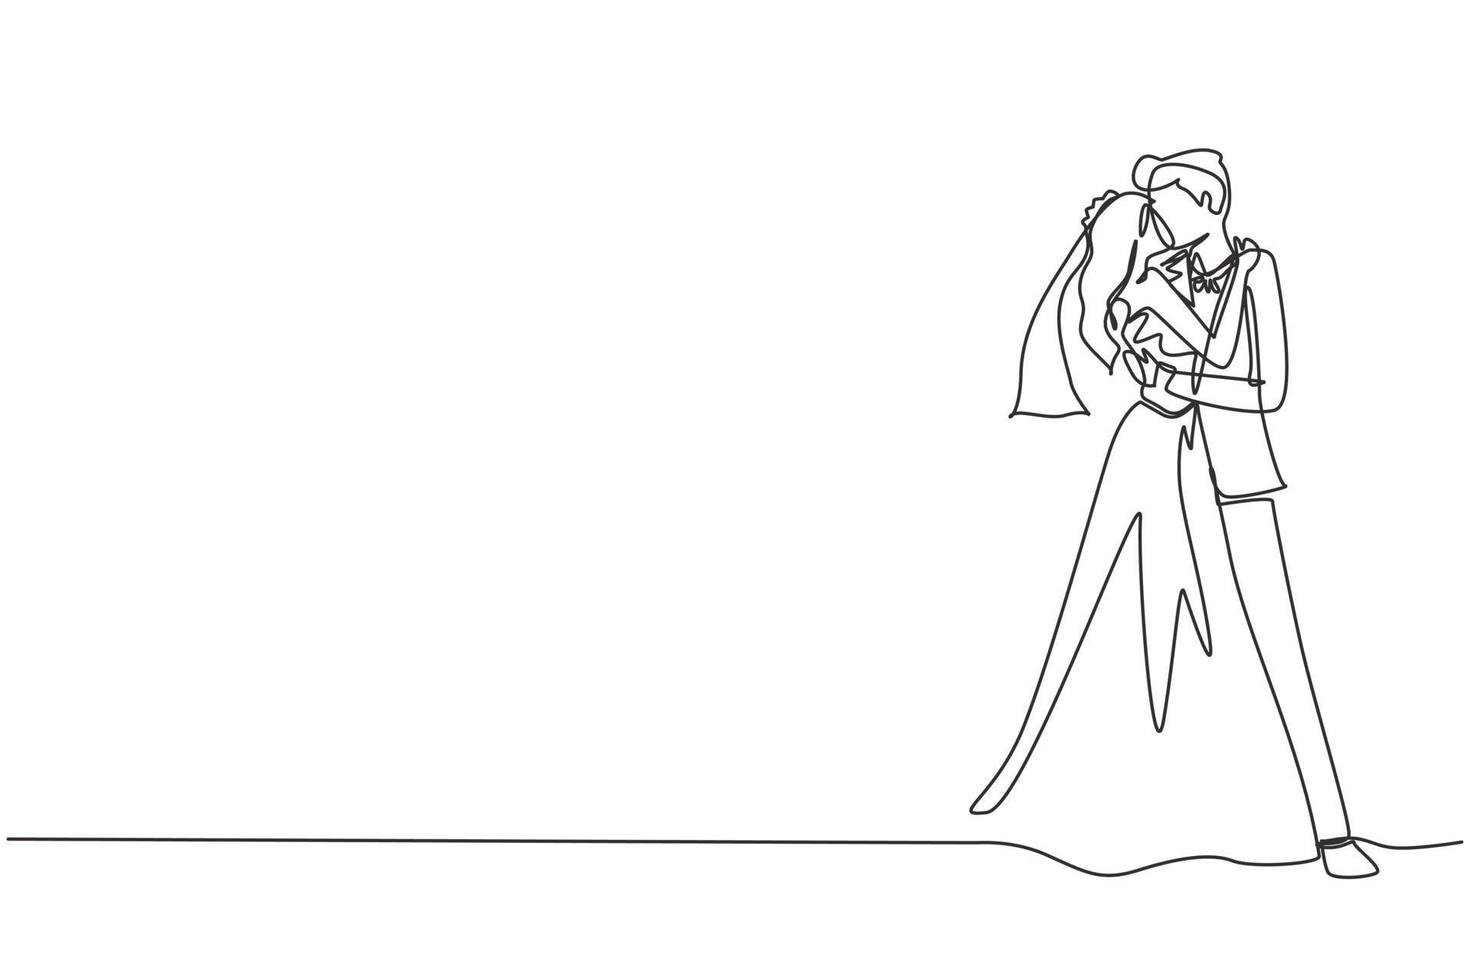 fortlaufende einzeilige Zeichnung liebevolles Ehepaar, das sich küsst, umarmt und Händchen hält. glücklicher Mann mit Anzug und Frau mit Kleid in Hochzeitsfeier. einzeiliges zeichnen design vektorgrafik vektor